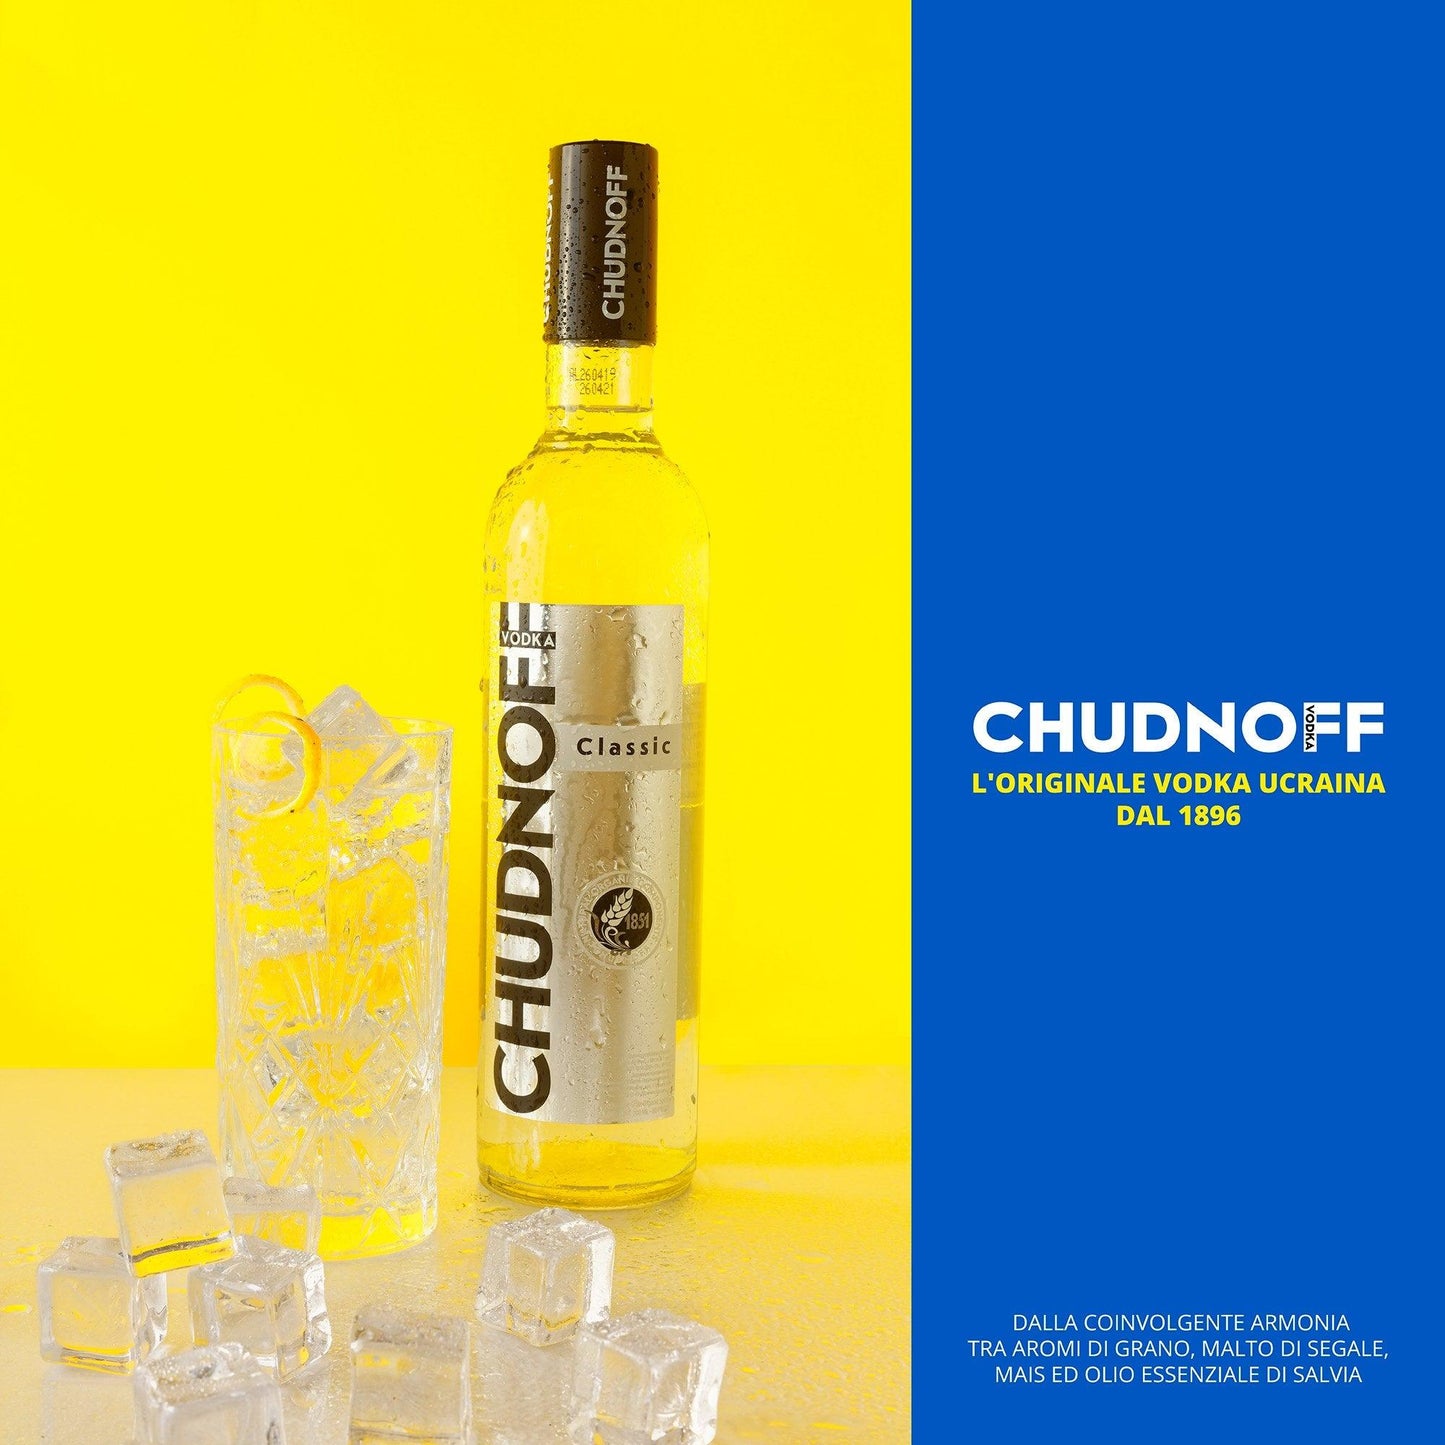 Vodka "Chudnoff" Classic - 2 Bottiglie - I migliori prodotti Made in Italy da Fiera Monza e Brianza Shop - Solo 30€! Acquista subito su Fiera di Monza Shop!